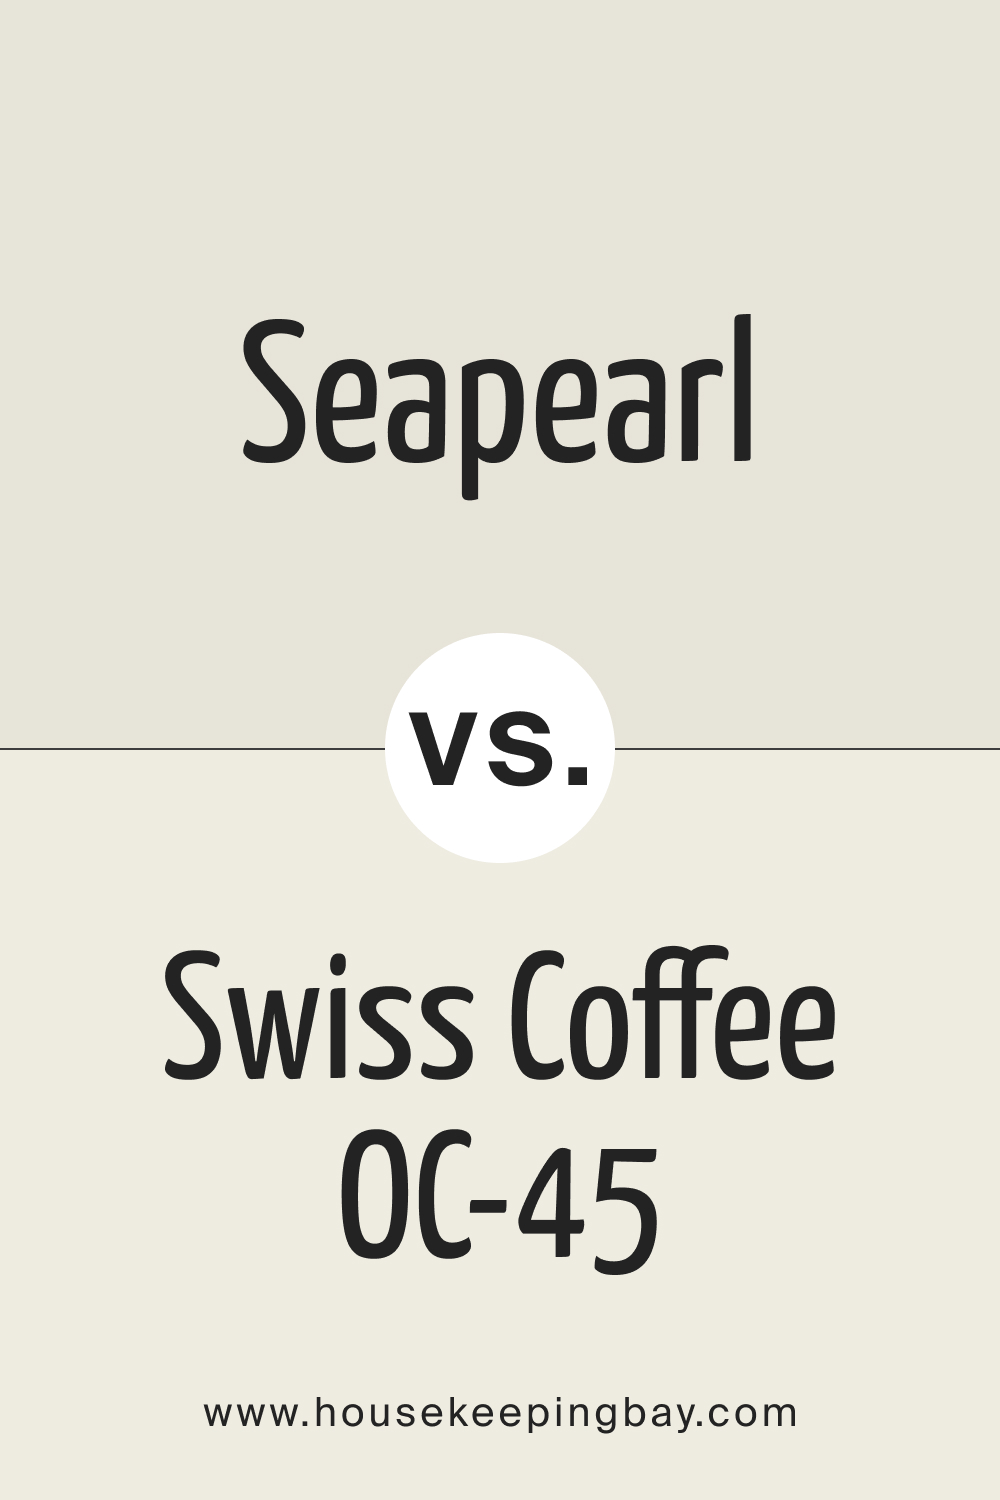 Seapearl vs Swiss Coffee OC 45